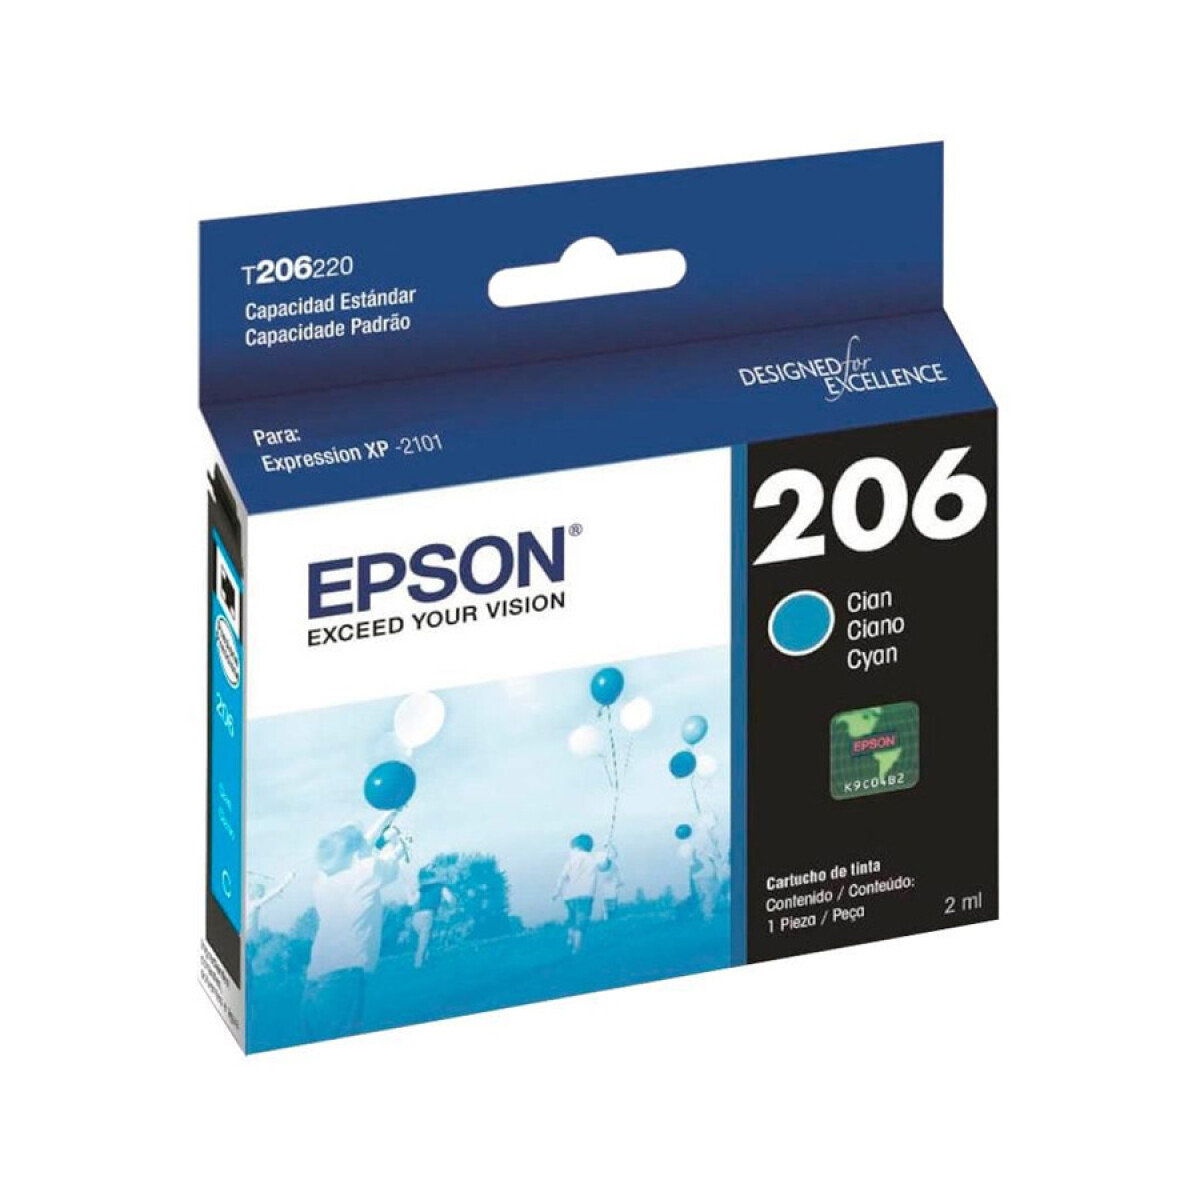 Cartucho de Tinta Epson T206 para Impresora Epson XP2101 - Cyan 